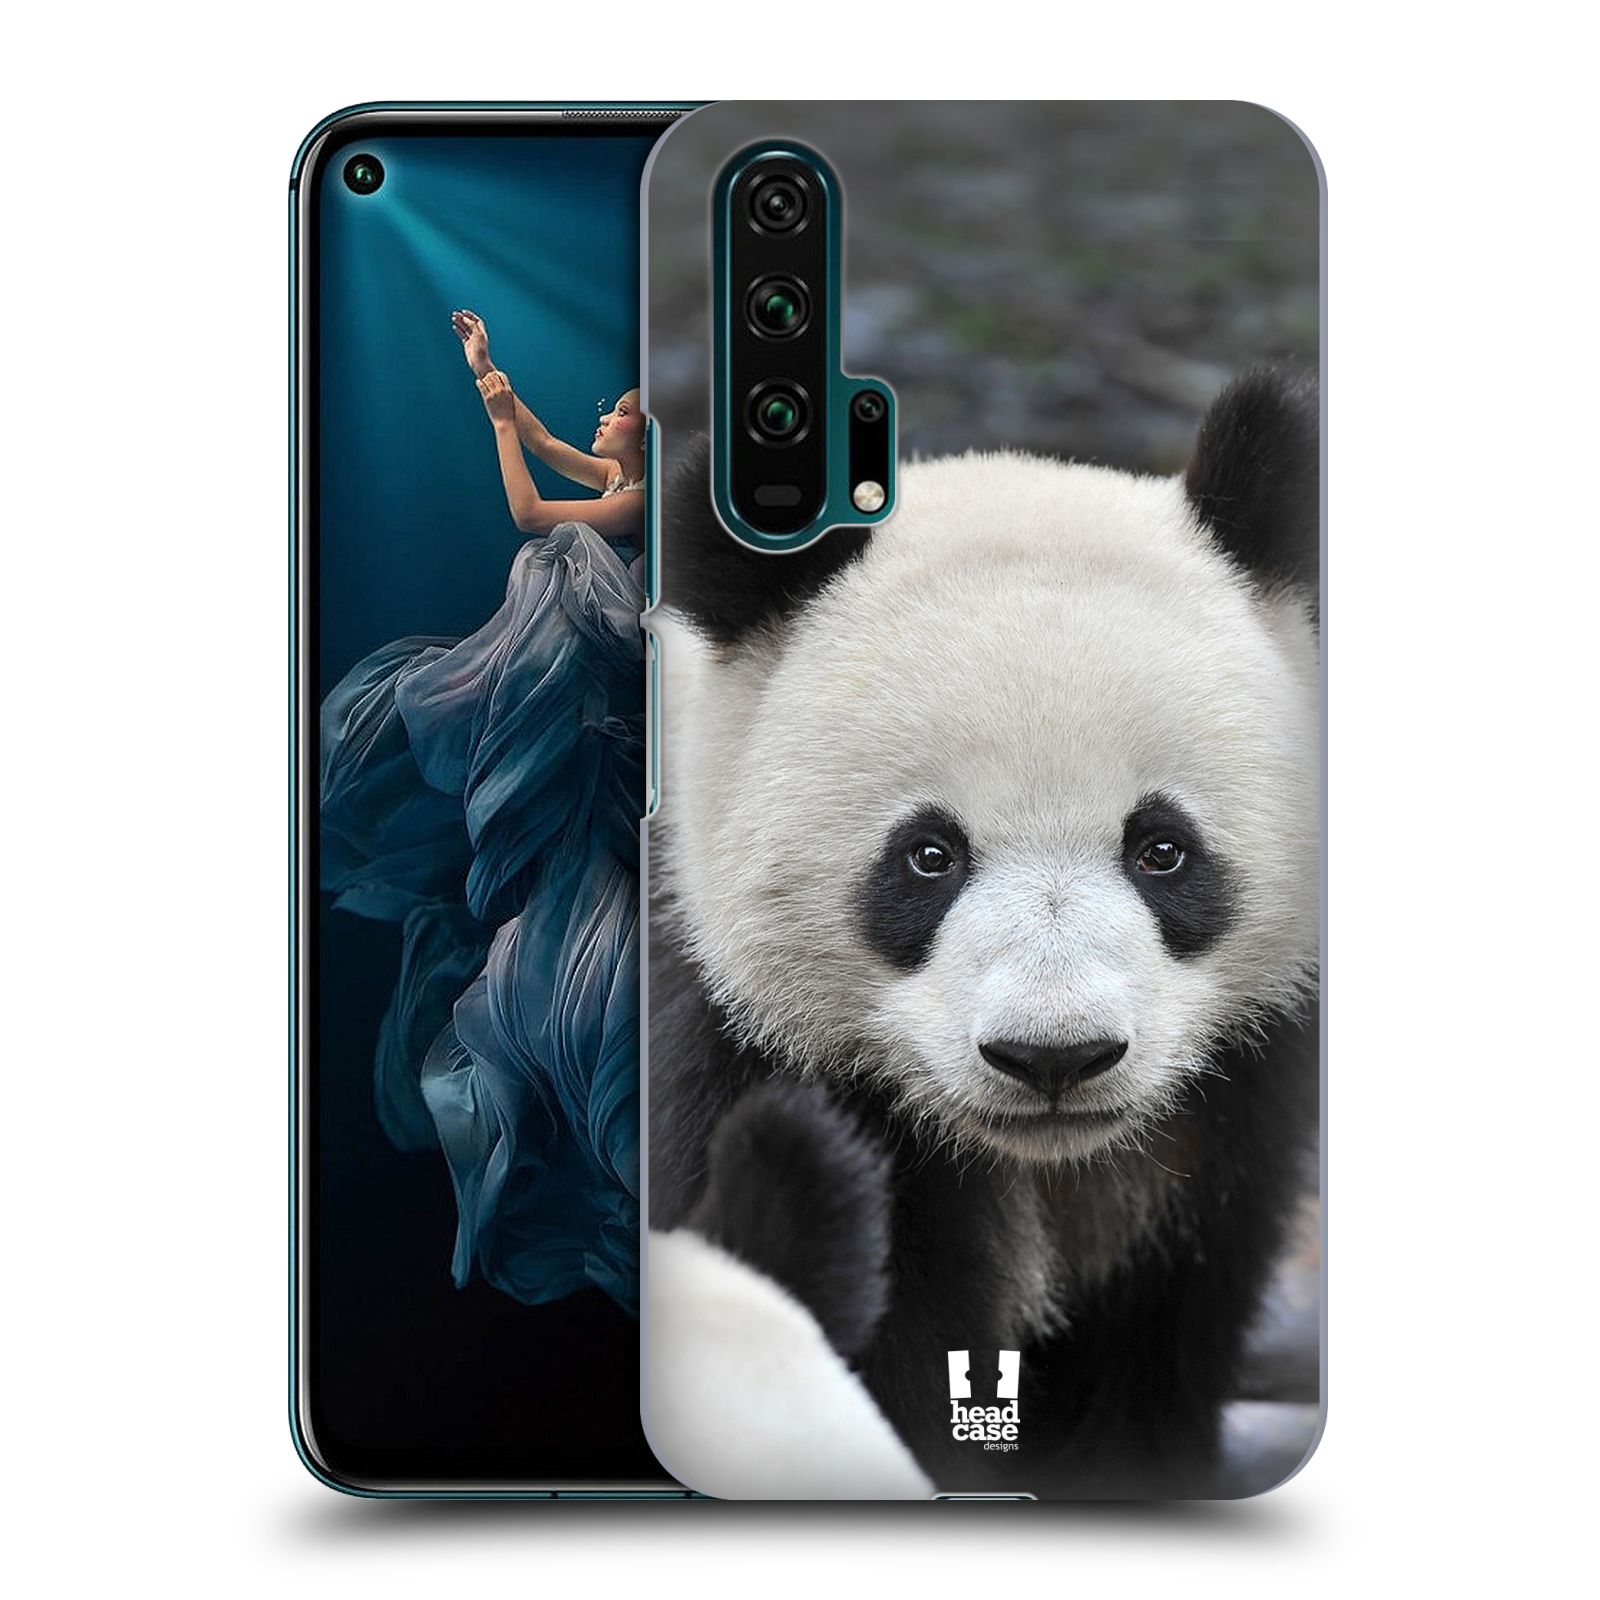 Zadní obal pro mobil Honor 20 PRO - HEAD CASE - Svět zvířat medvěd panda